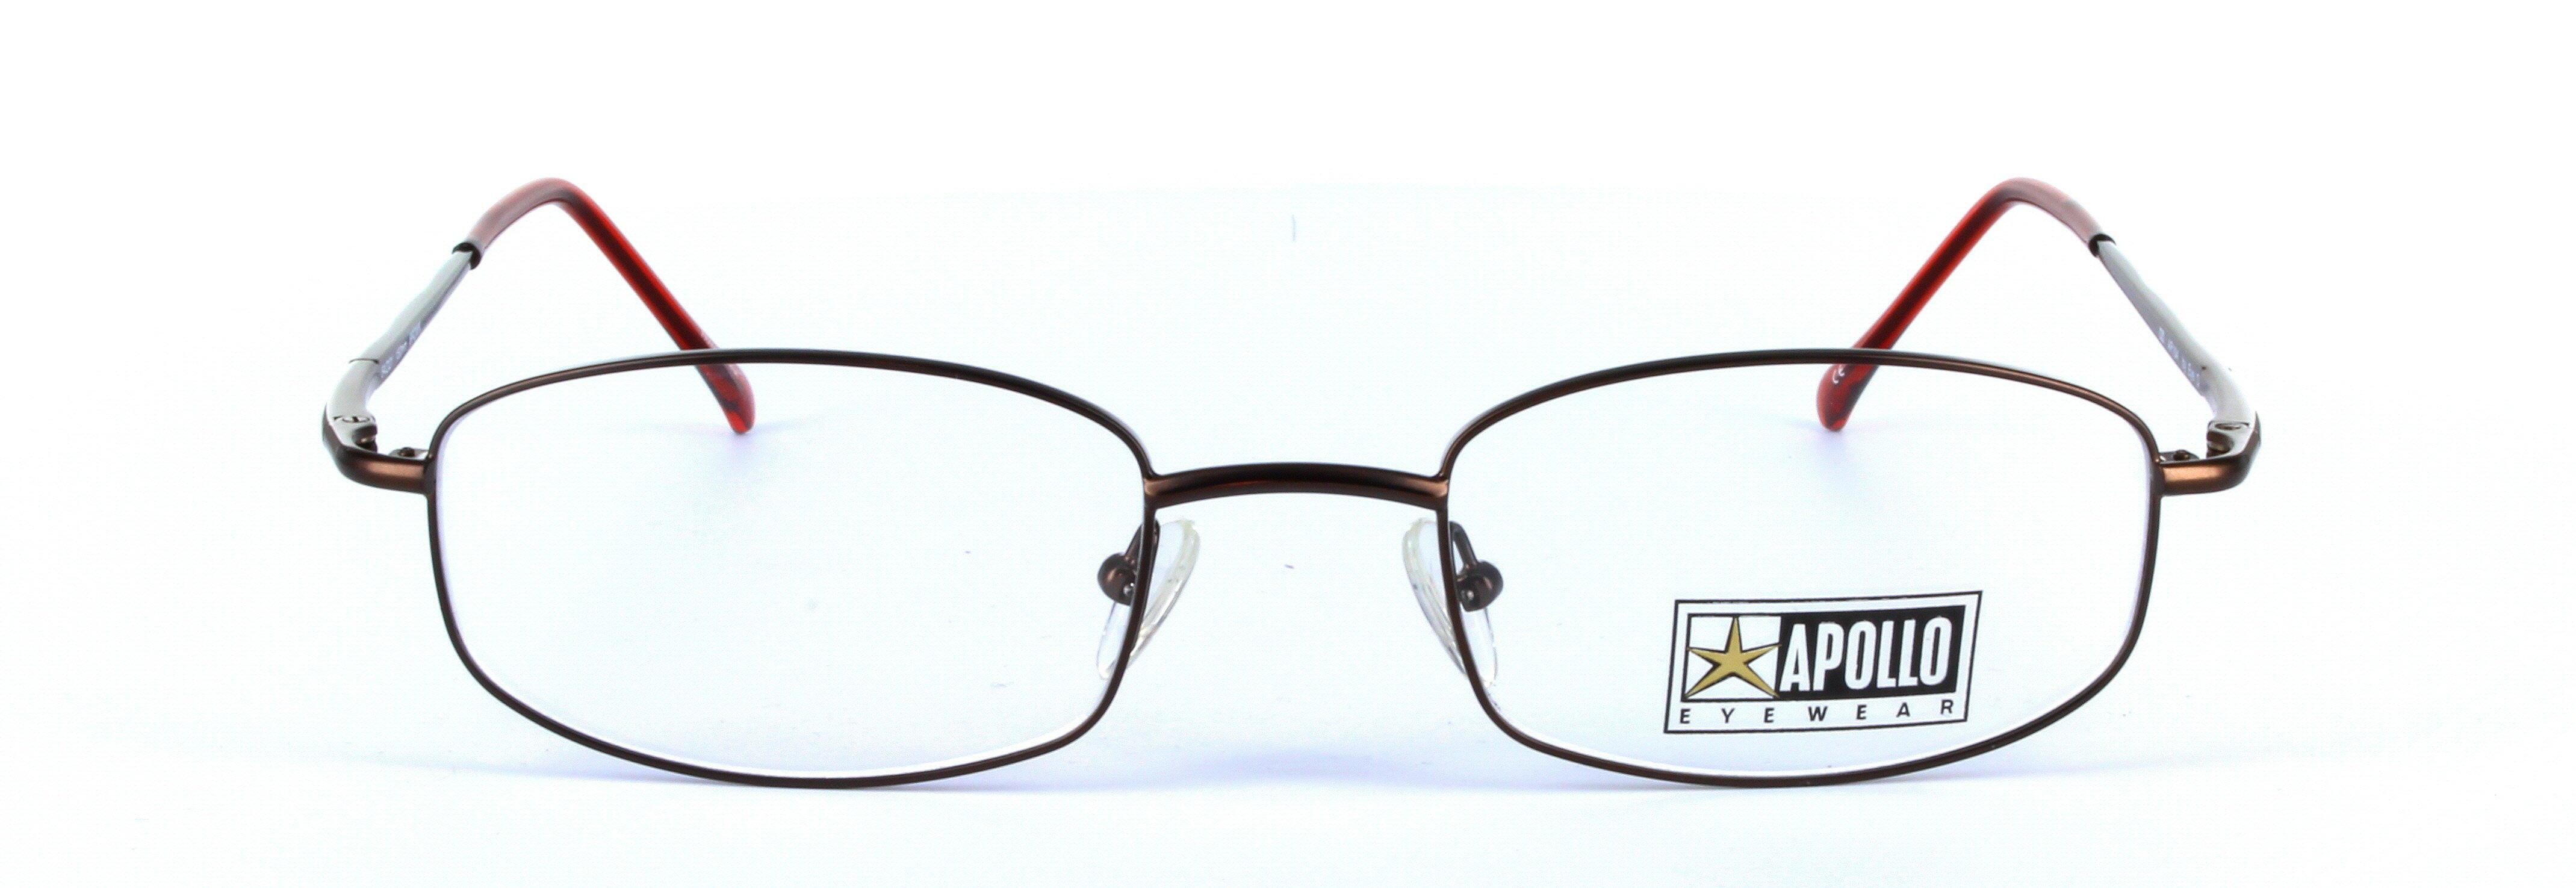 Barbera Brown Full Rim Oval Plastic Glasses  - Image View 4